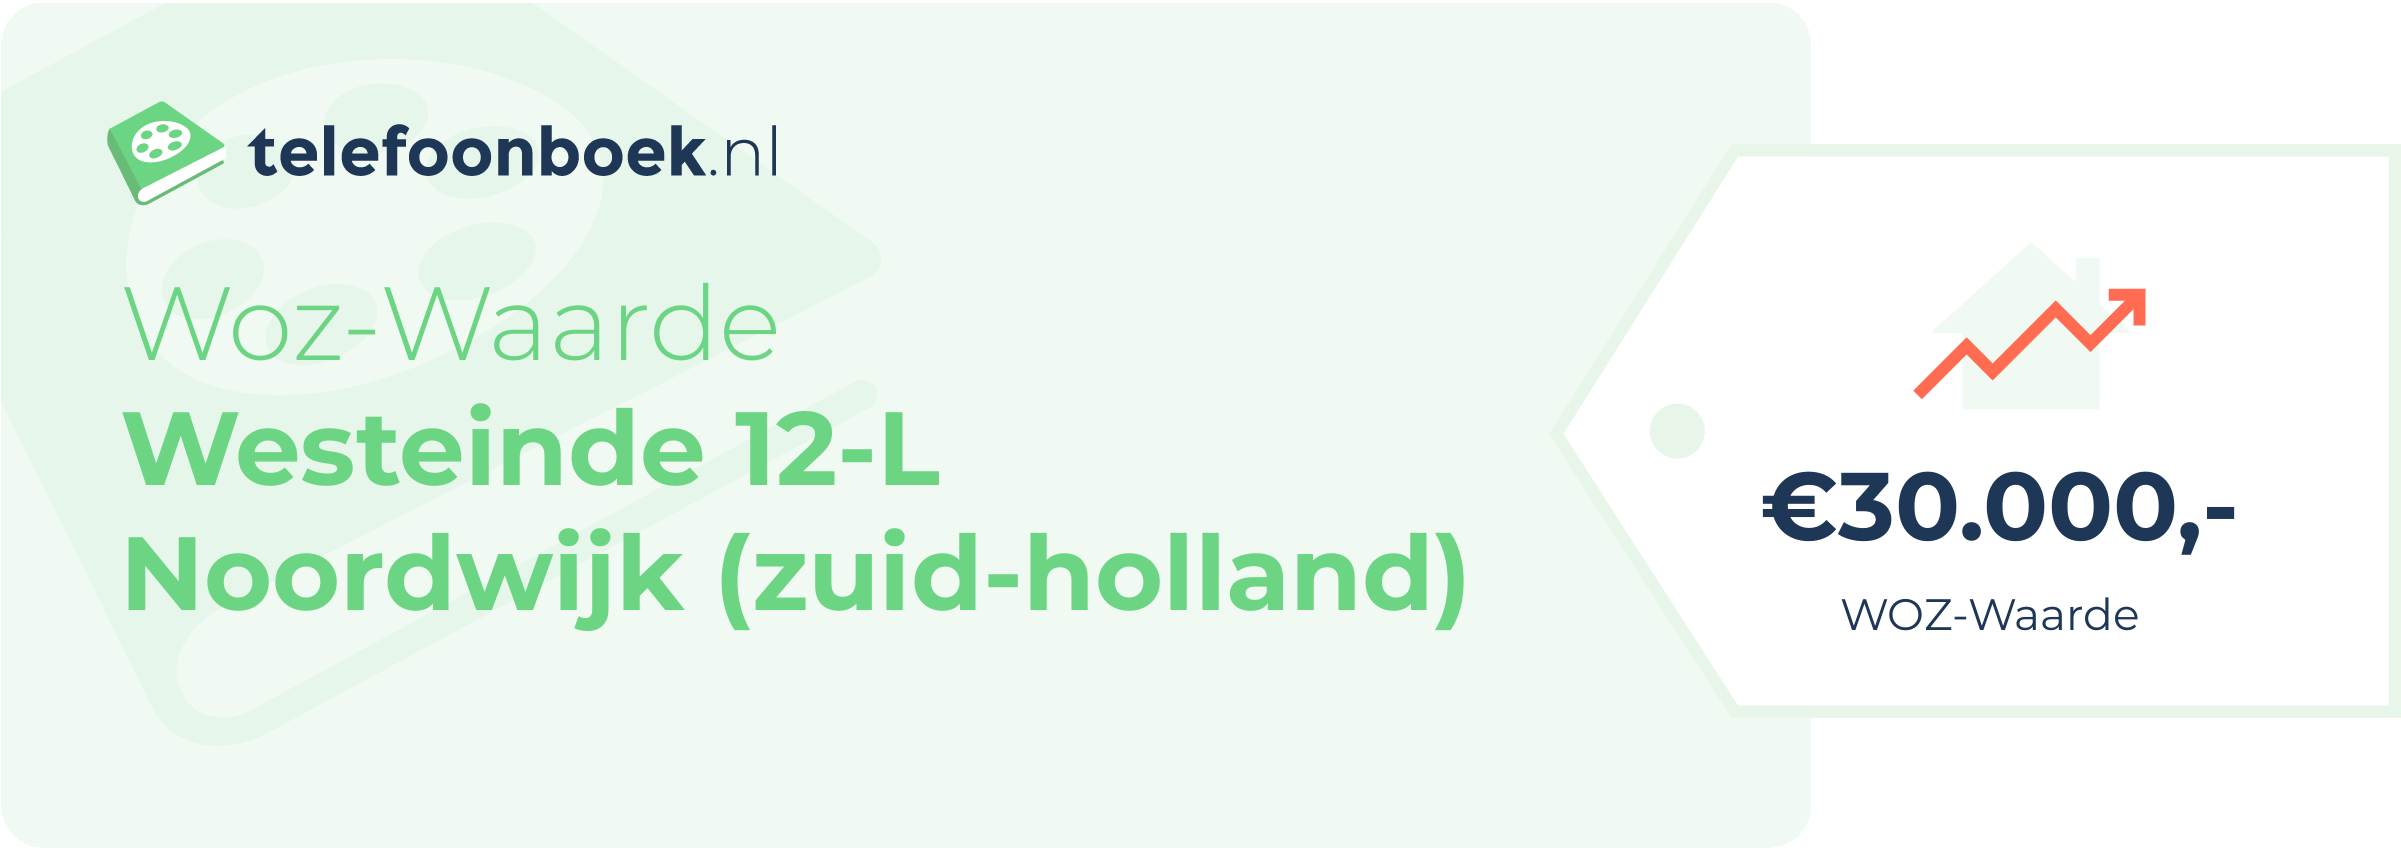 WOZ-waarde Westeinde 12-L Noordwijk (Zuid-Holland)